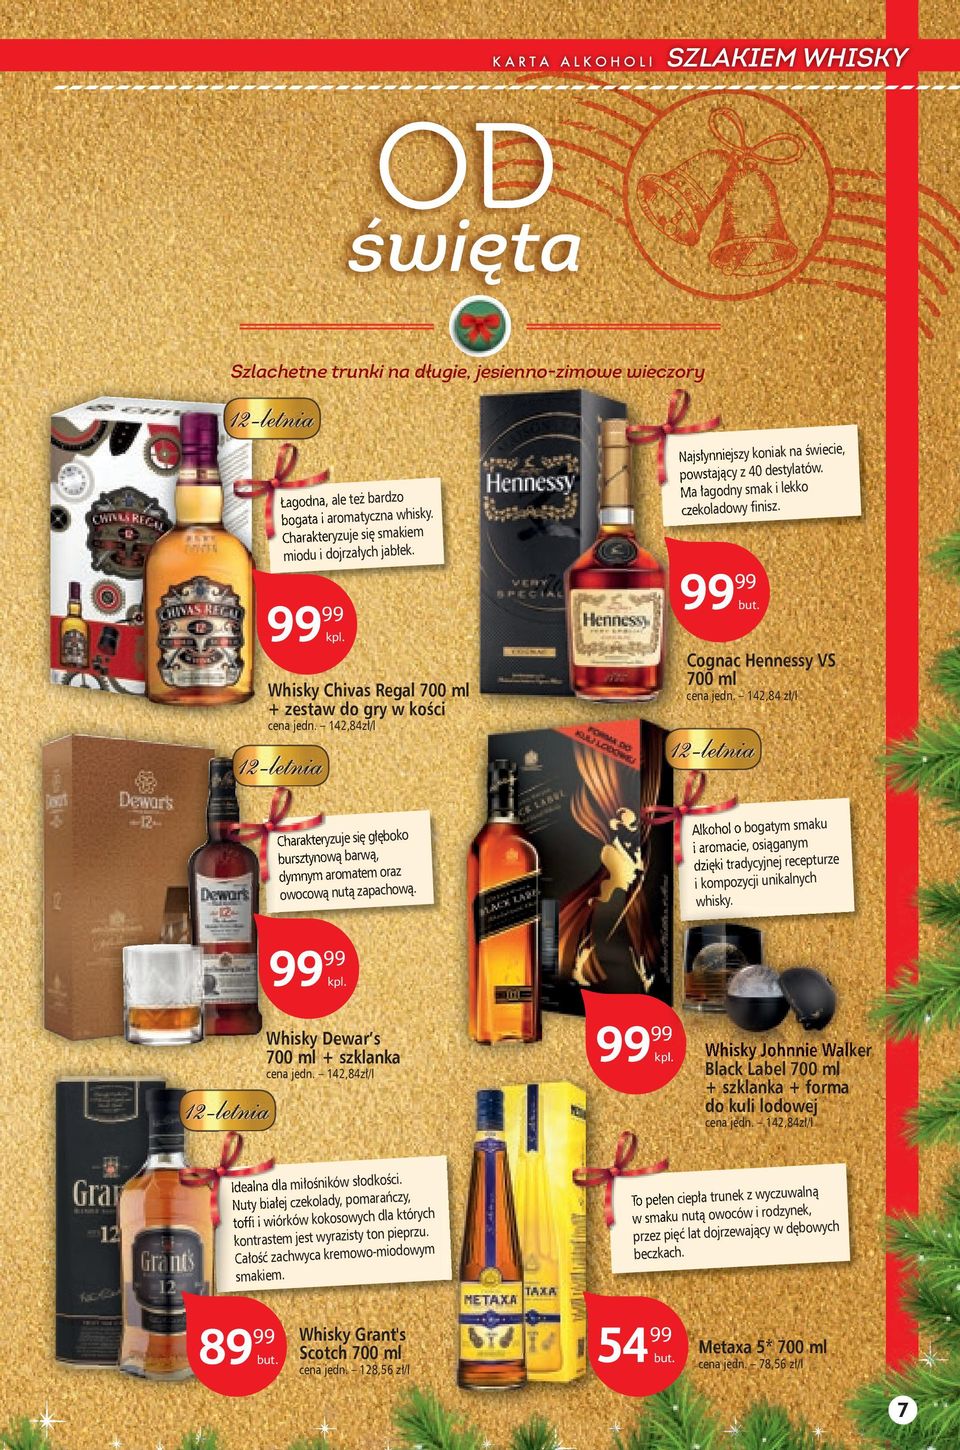 142,84 zł/l cena jedn. 142,84zł/l Alkohol o bogatym smaku i aromacie, osiąganym dzięki tradycyjnej recepturze i kompozycji unikalnych whisky.